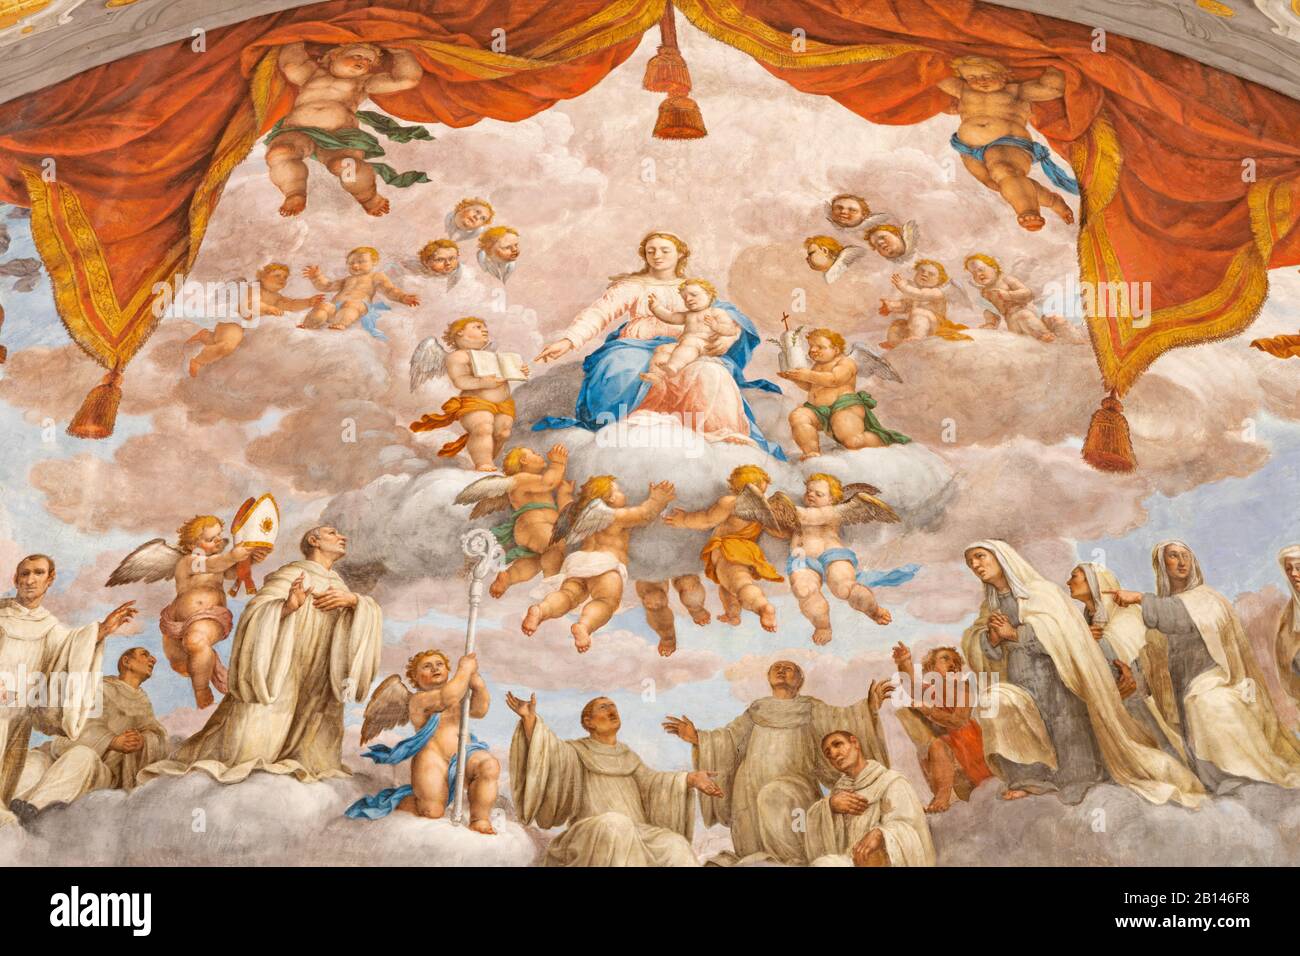 FERRARA, ITALIE - 30 JANVIER 2020 : la fresque de Madonna parmi les saints bénédictins dans l'apsida de l'église Basilique di San Giorgio fuori le mura. Banque D'Images